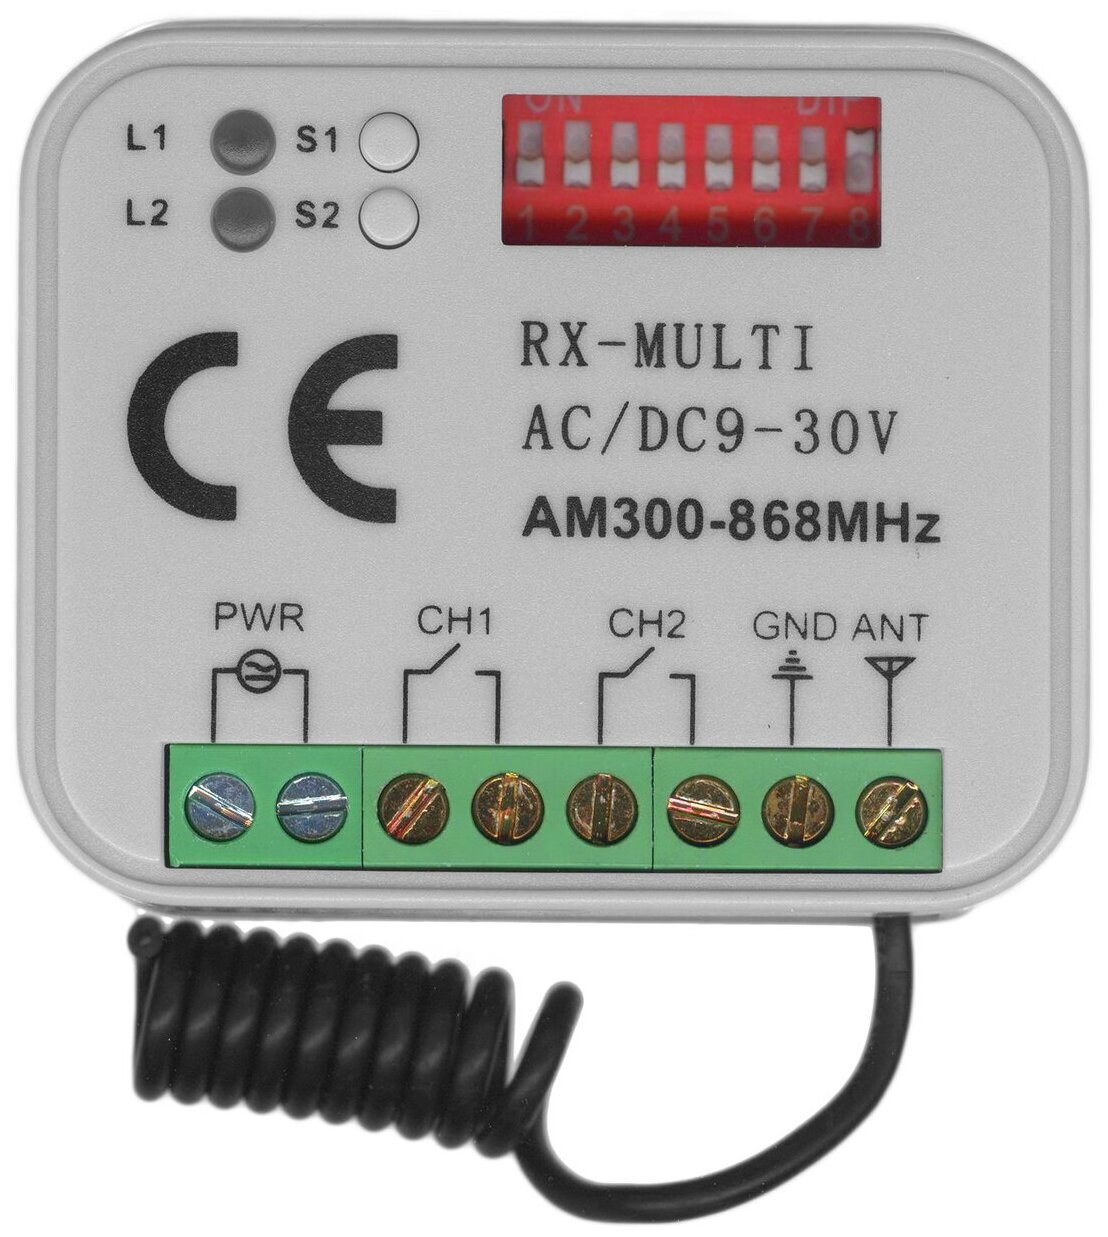 Универсальный приемник RX-MULTI 300-868MHz для управления воротами и шлагбаумами. Работает с пультами разных производителей.